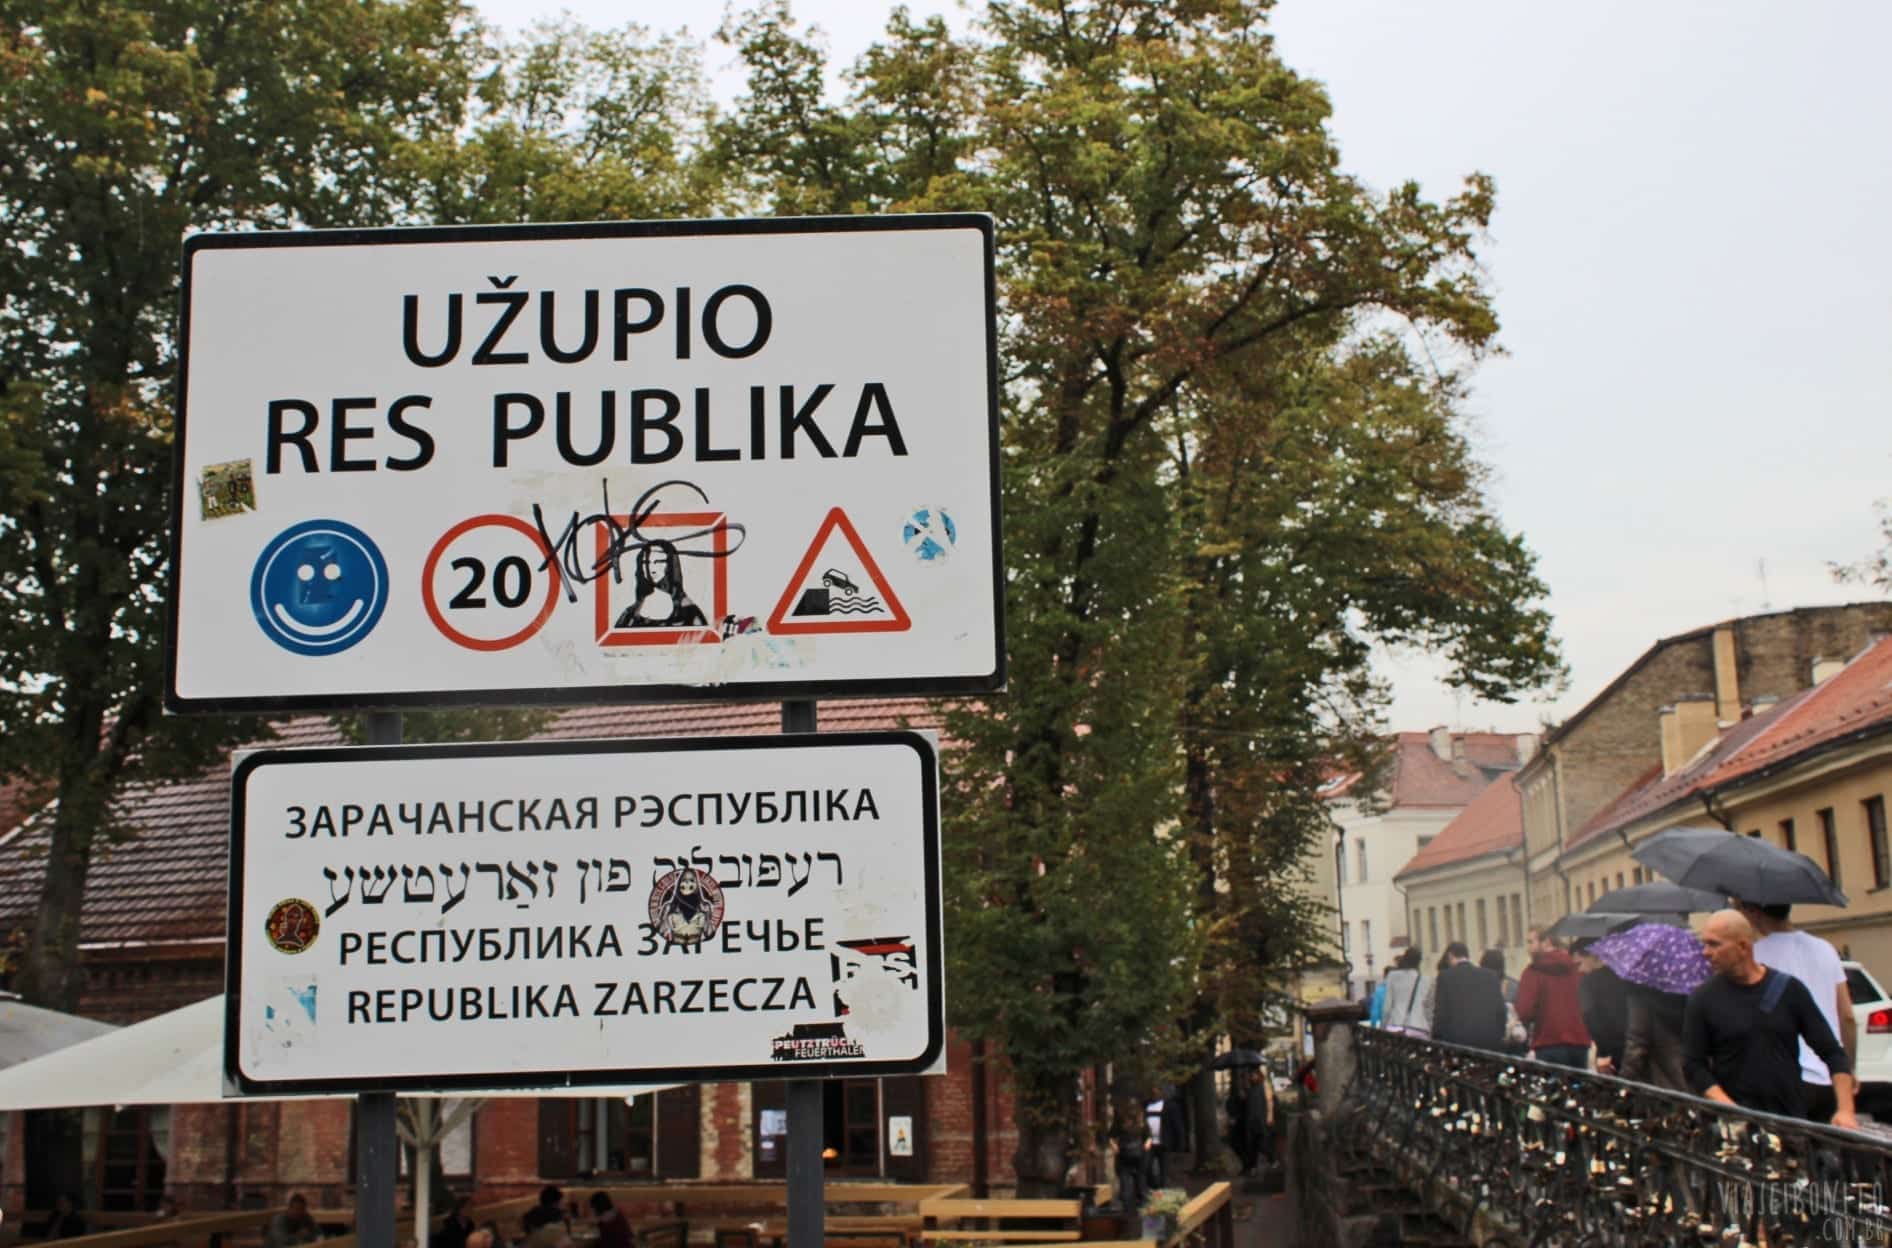 Você já ouviu falar em um país europeu chamado Uzupis?